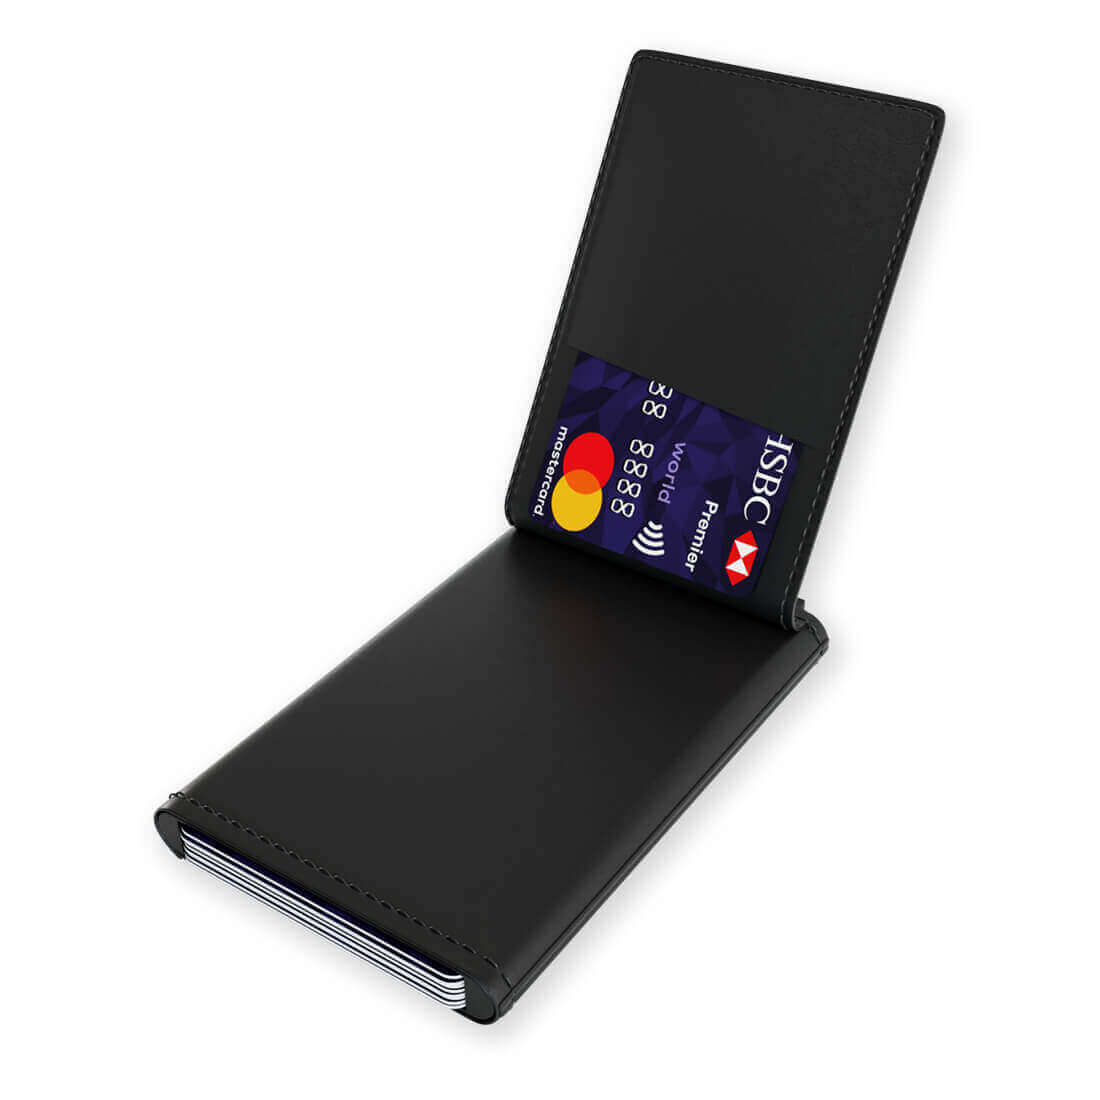 RFID-blockierender Kartenhalter mit Quick-Pay-System